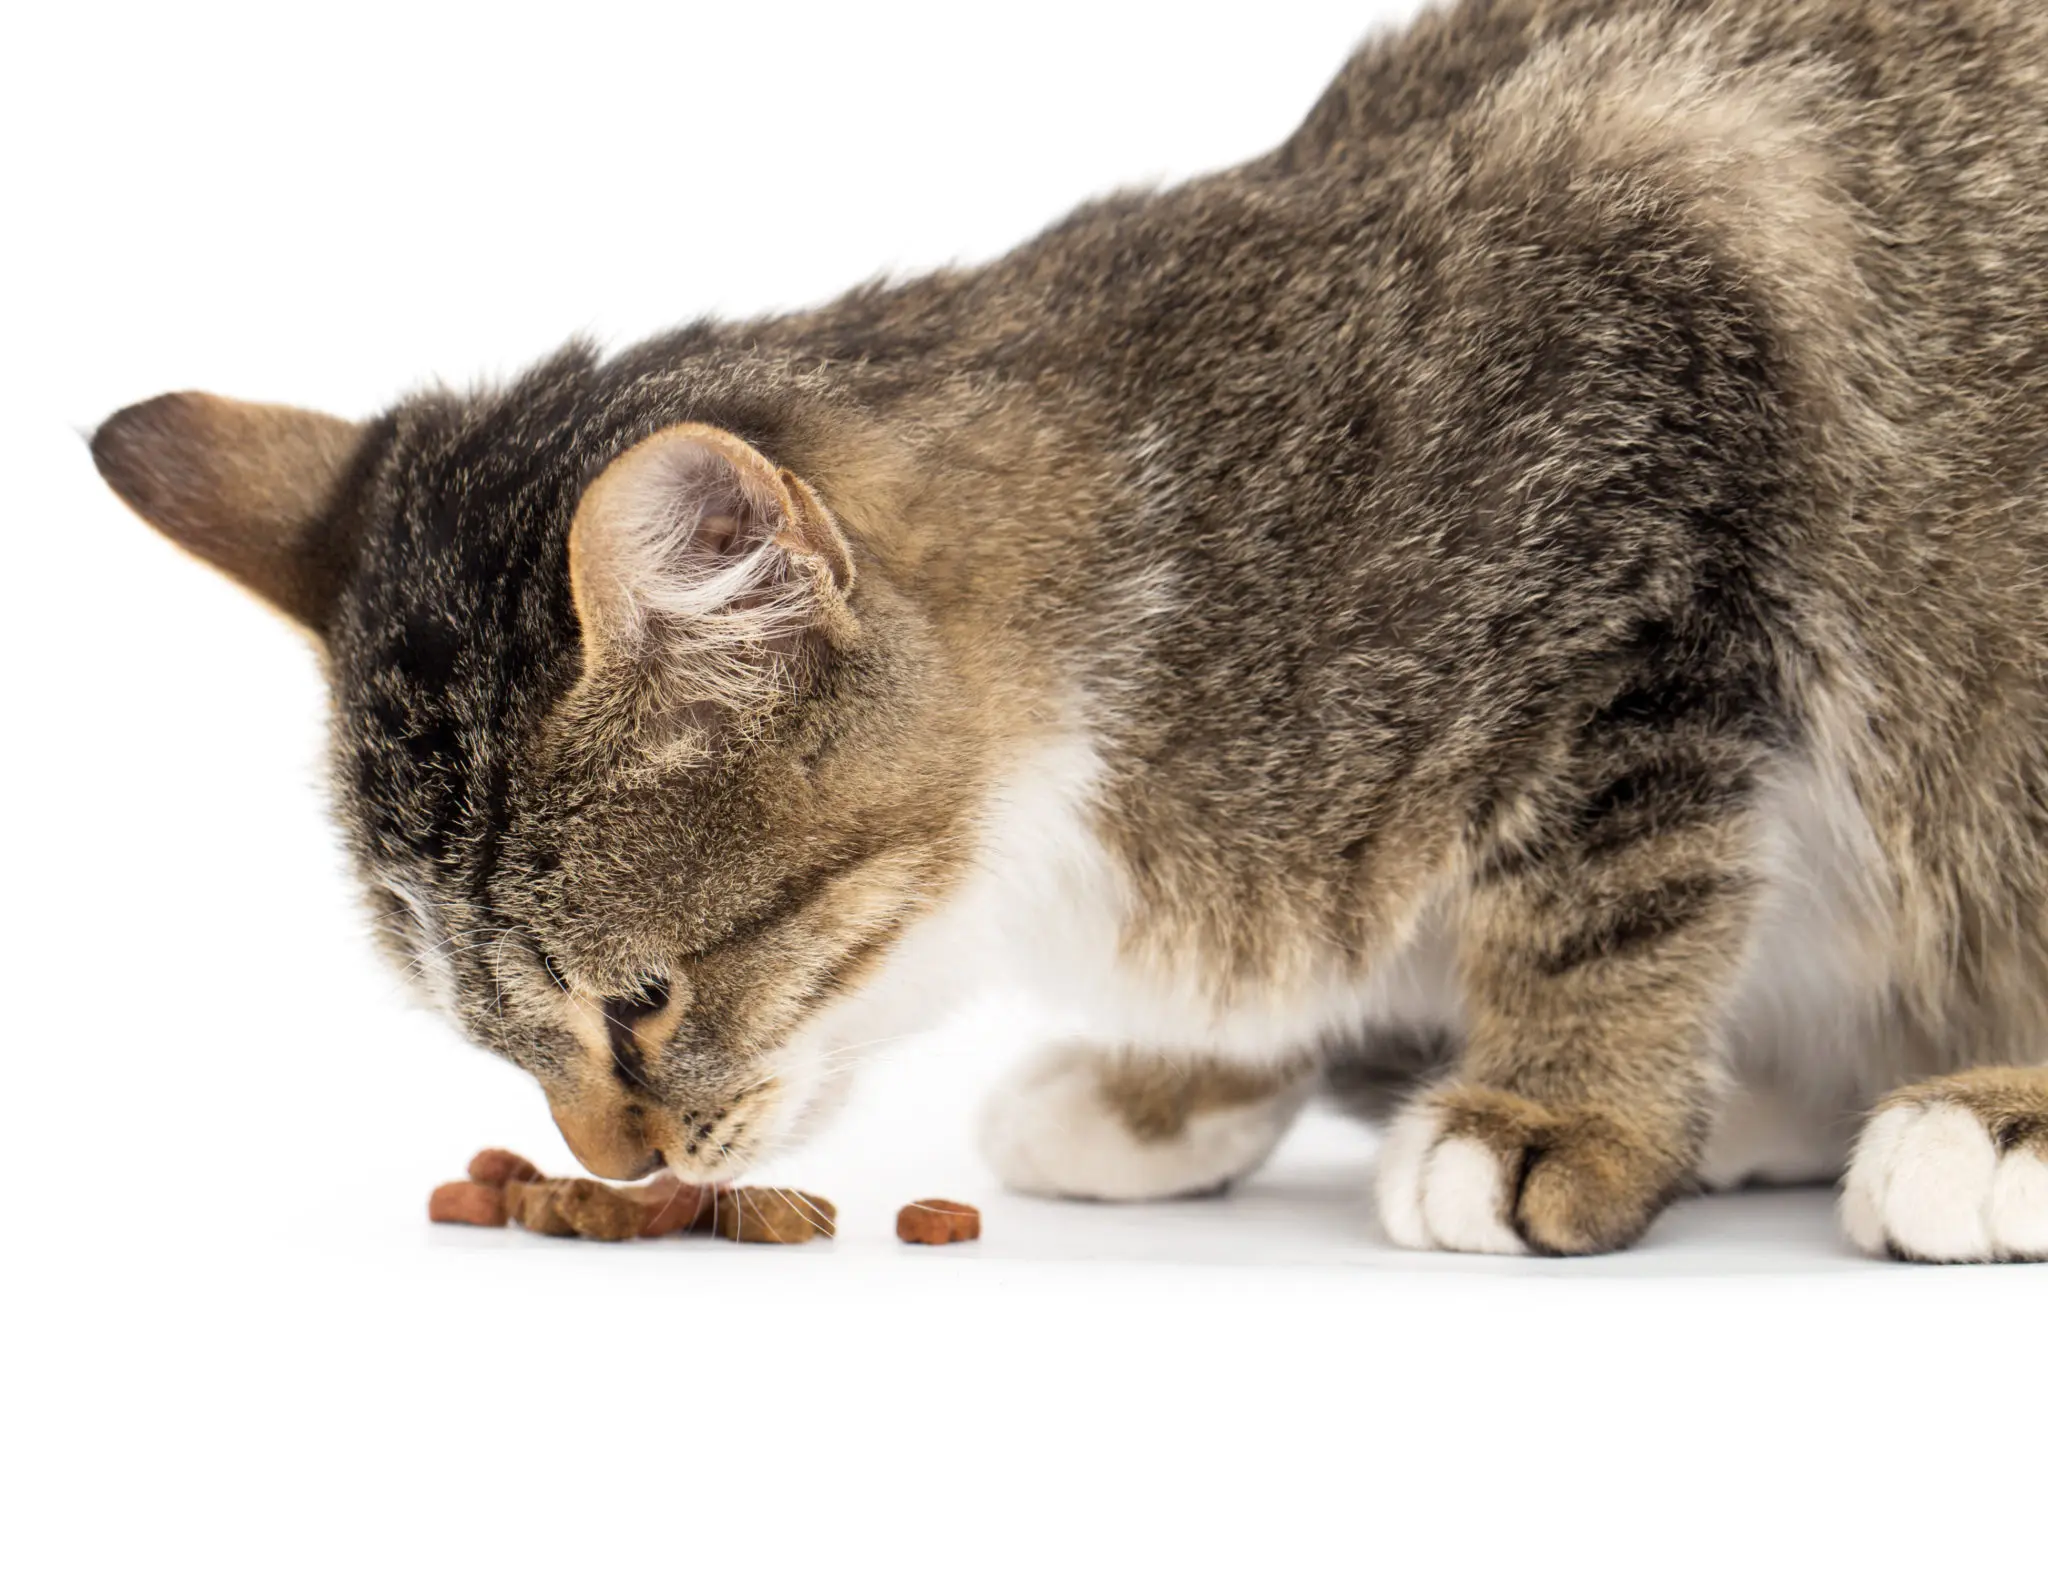 comida para gatos viejos sin dientes - Qué le puedo dar de comer a un gato anciano